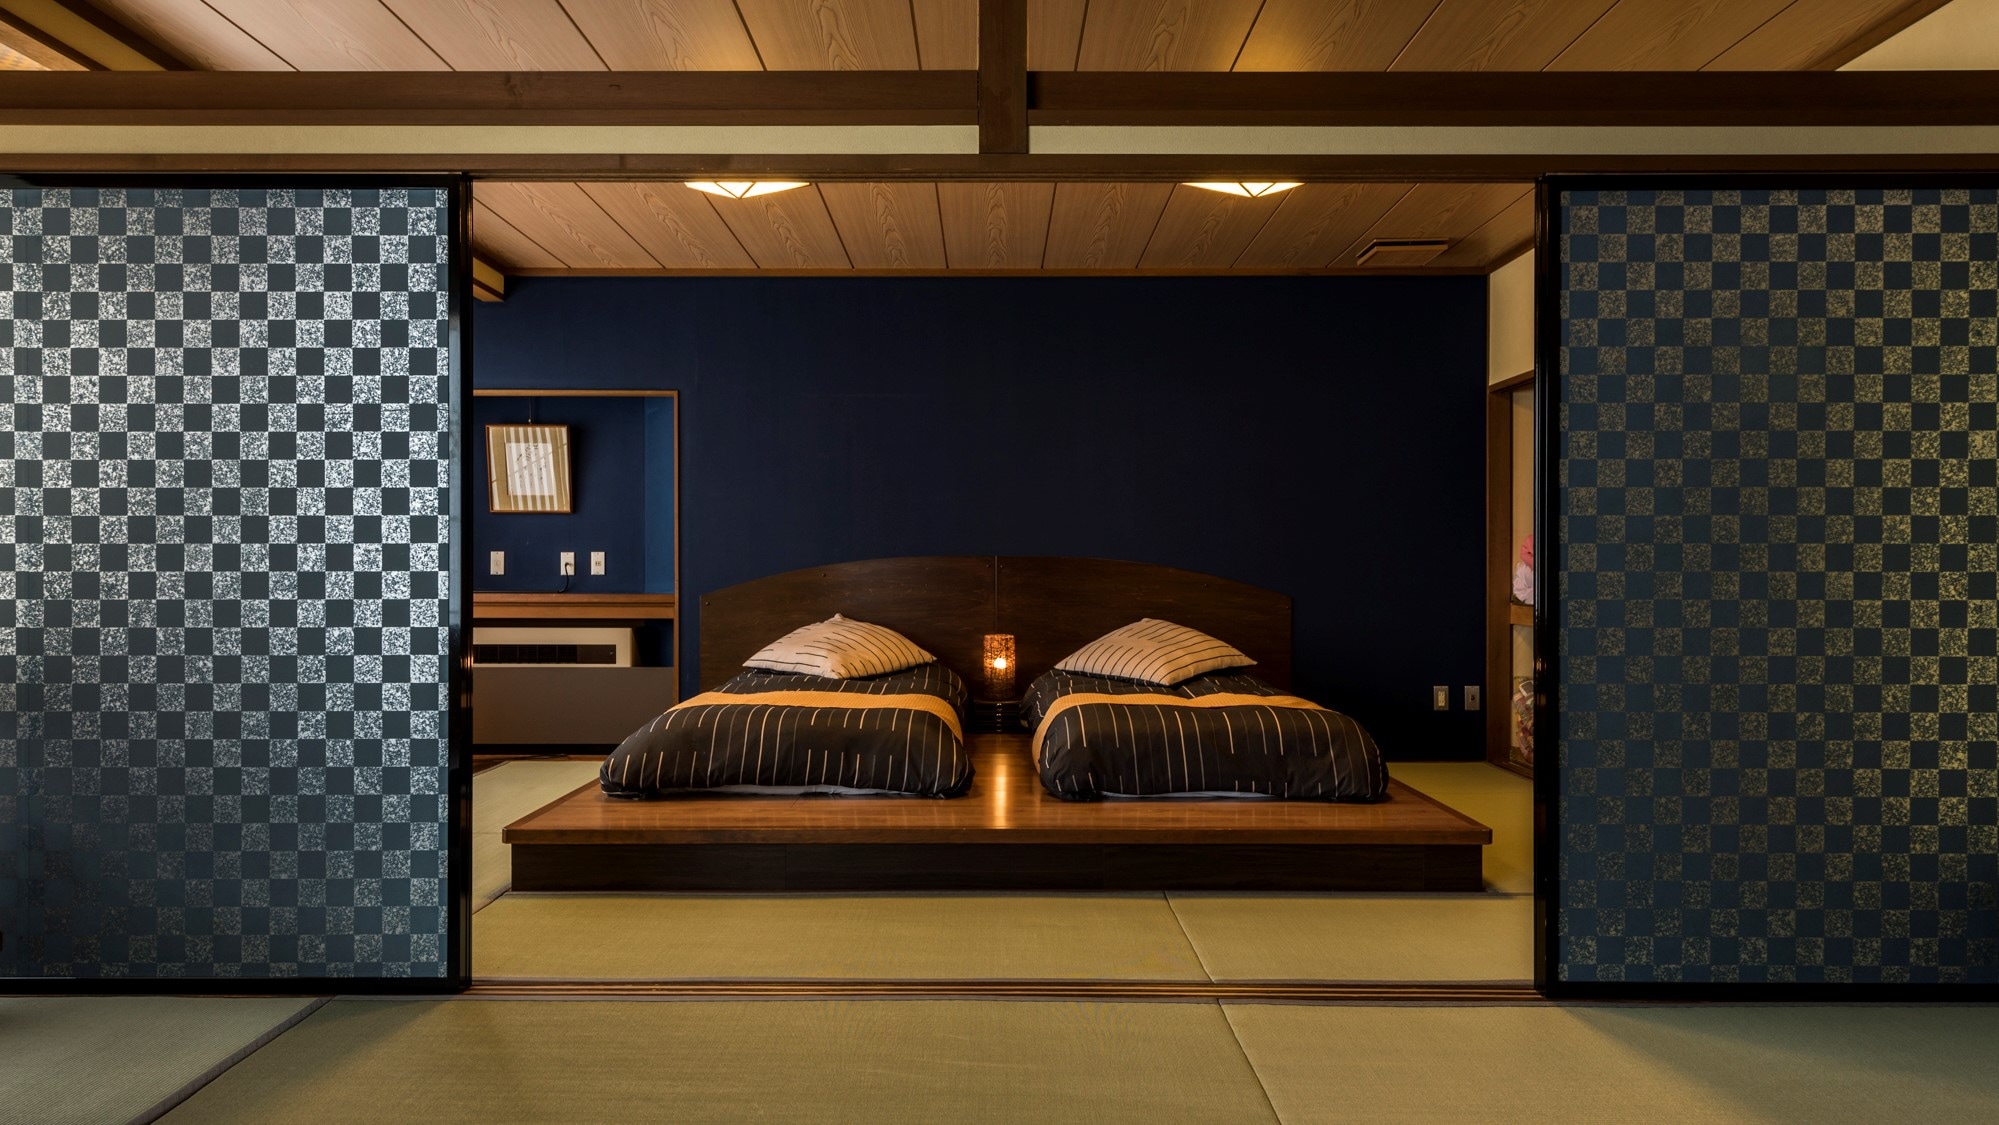 [本館/日西合璧房間] 日式房間10張榻榻米+臥室10張榻榻米的寬敞空間放鬆身心。